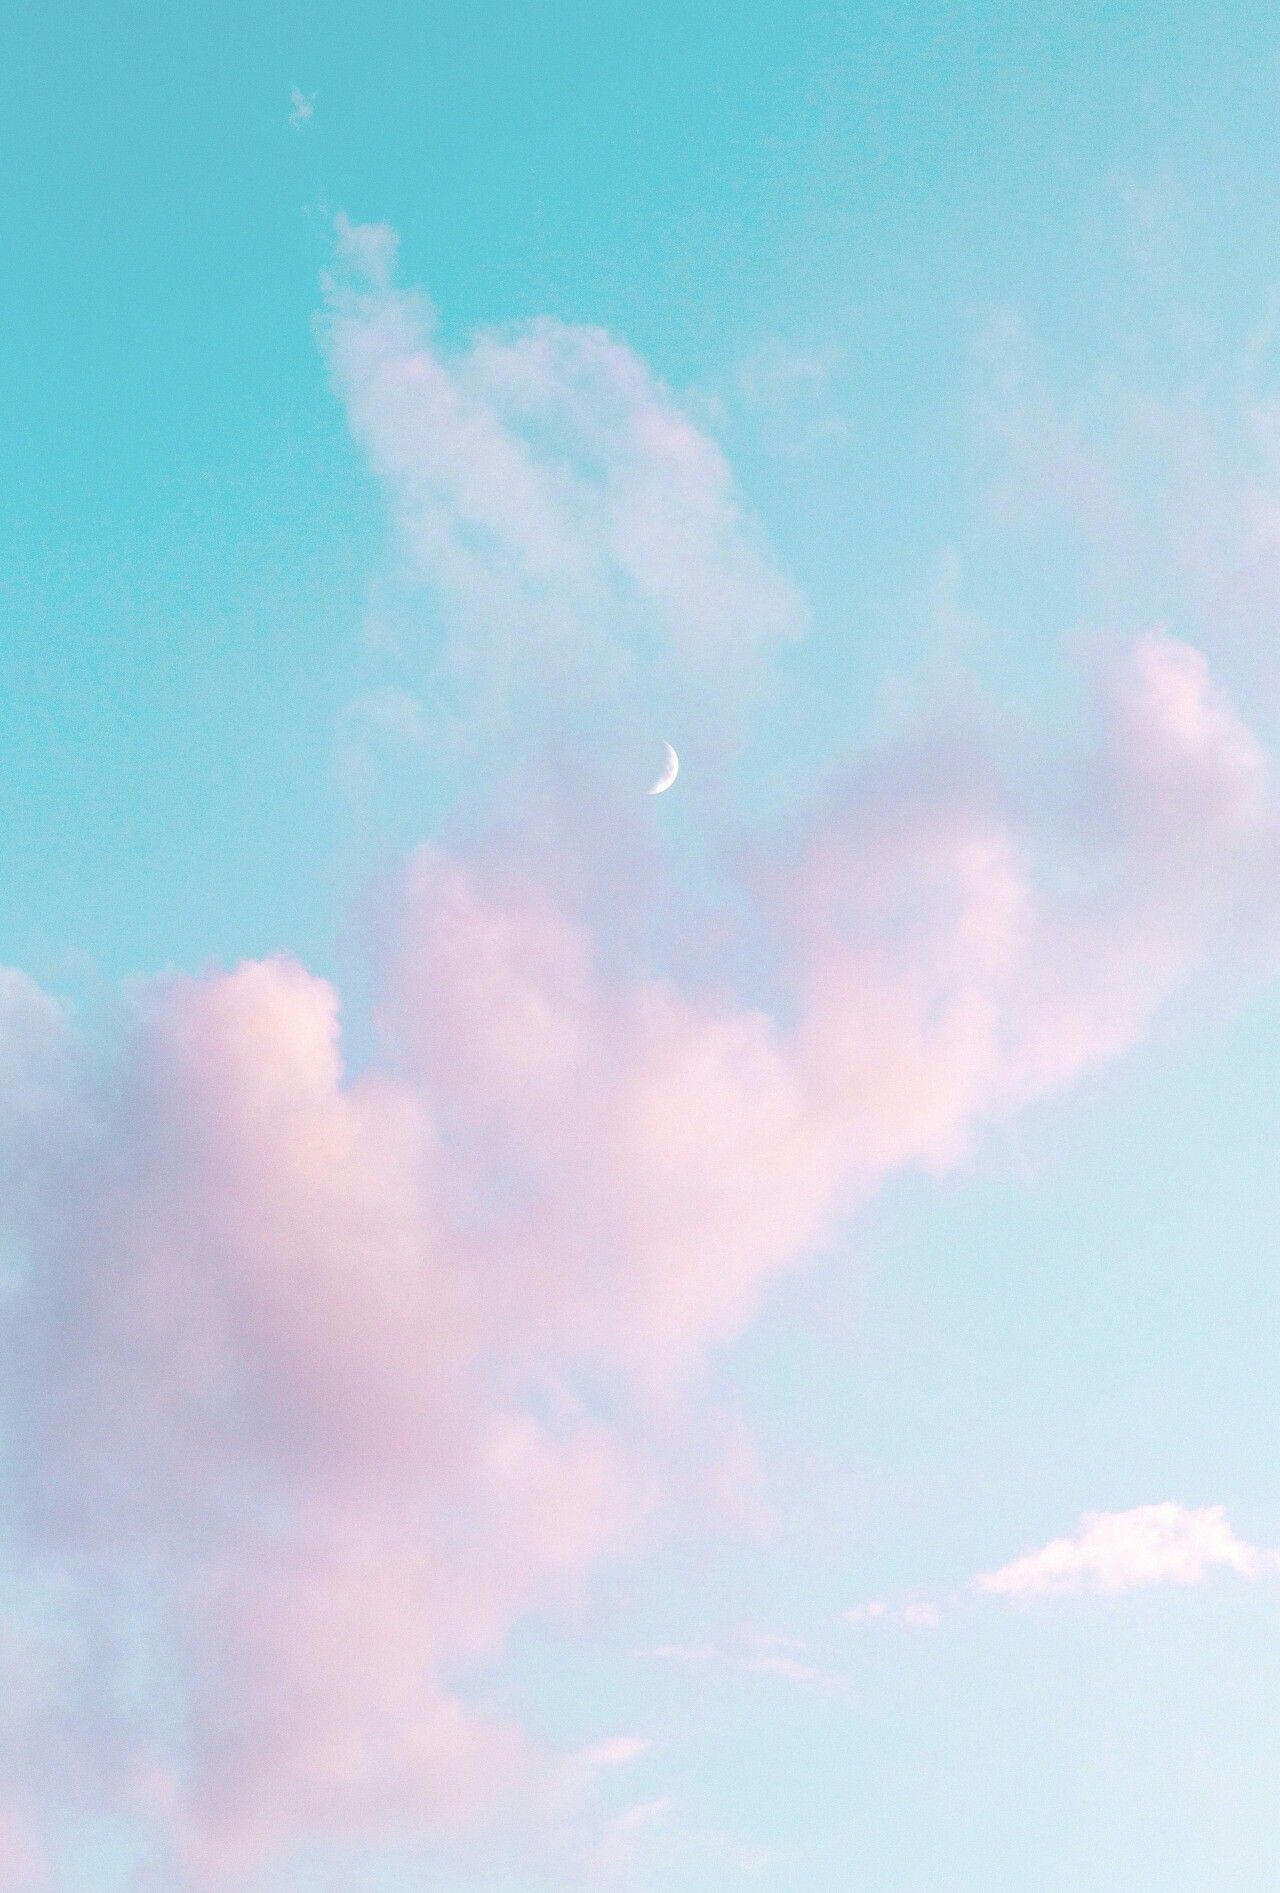 bầu trời xanh và những đám mây hồng nhạt